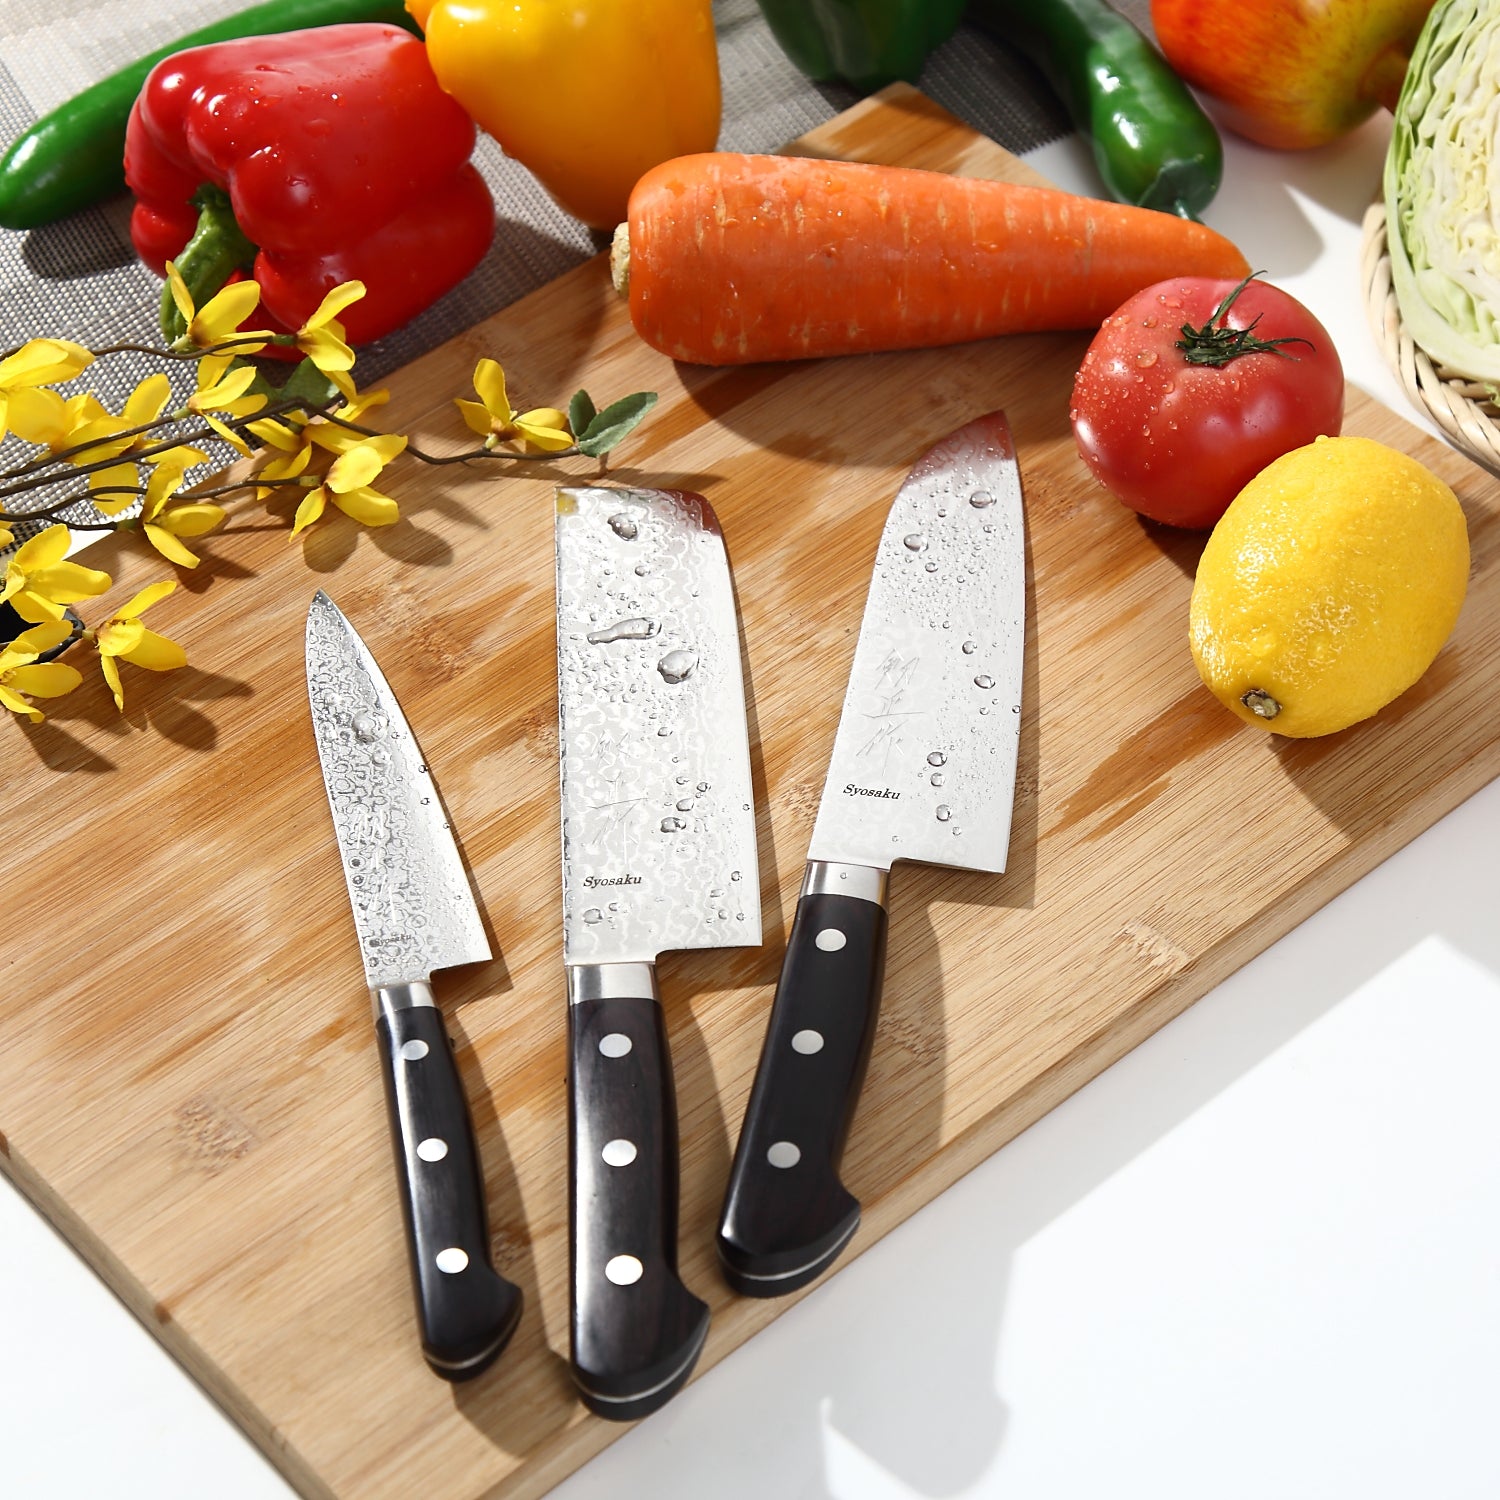 Syosaku Japanese Petty Best Sharp Kitchen Chef Knife Shaded Damascus VG-10 16 Layer Black Pakkawood Handle, 5.3-inch (135mm)